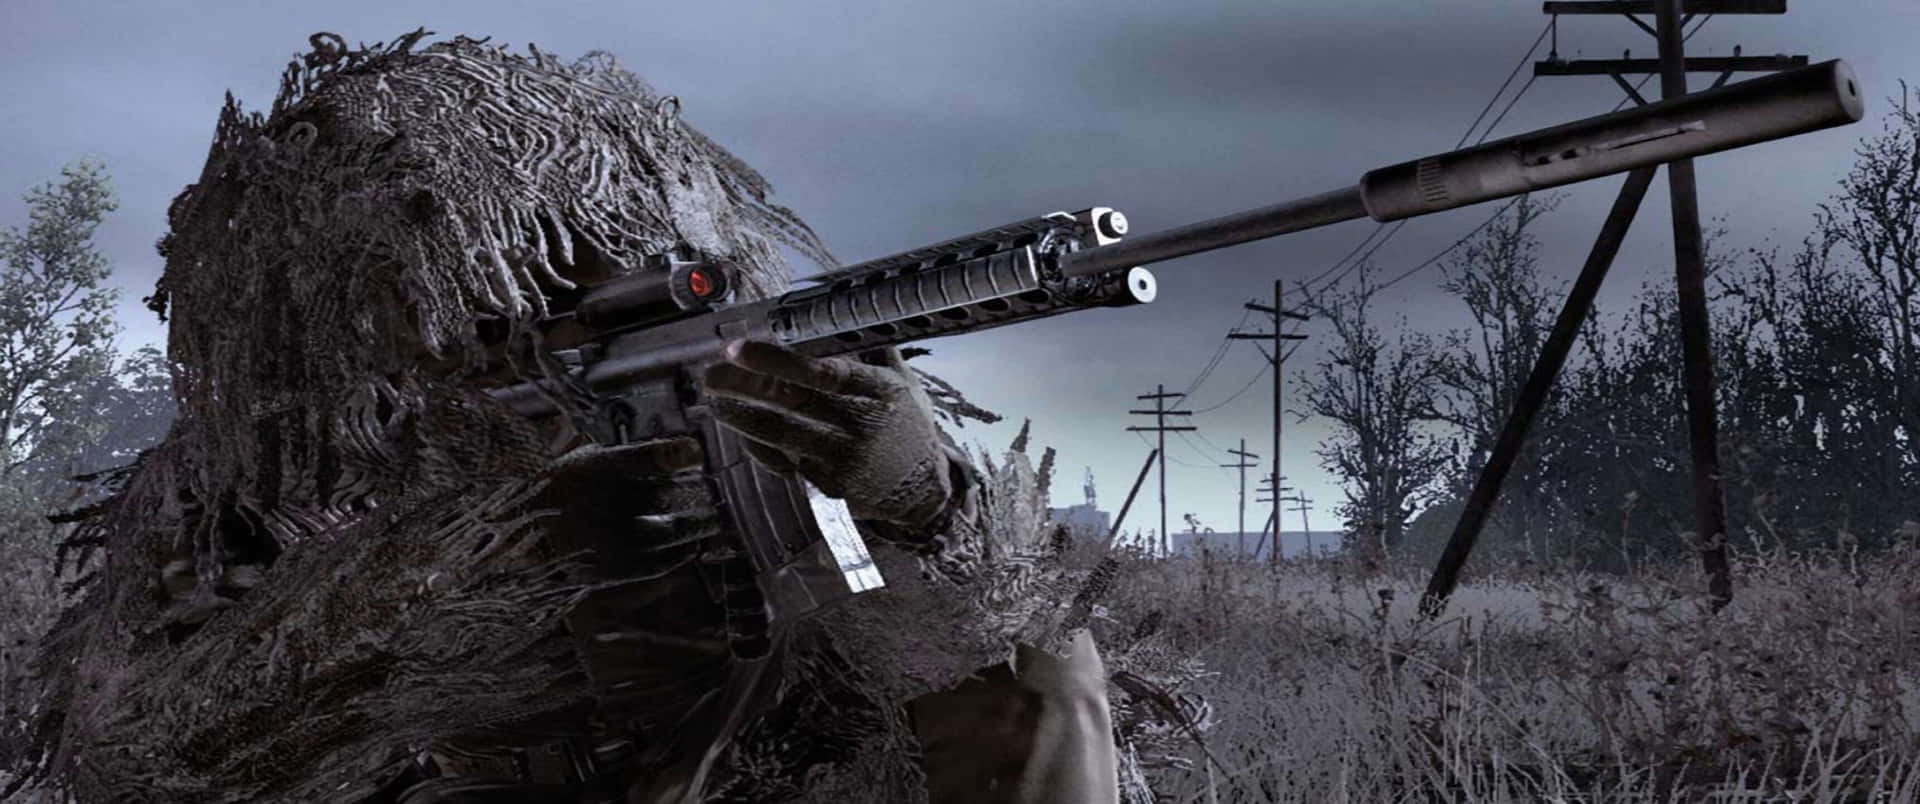 Soldadoen Camuflaje 3440x1440p Fondo De Pantalla De Call Of Duty Modern Warfare